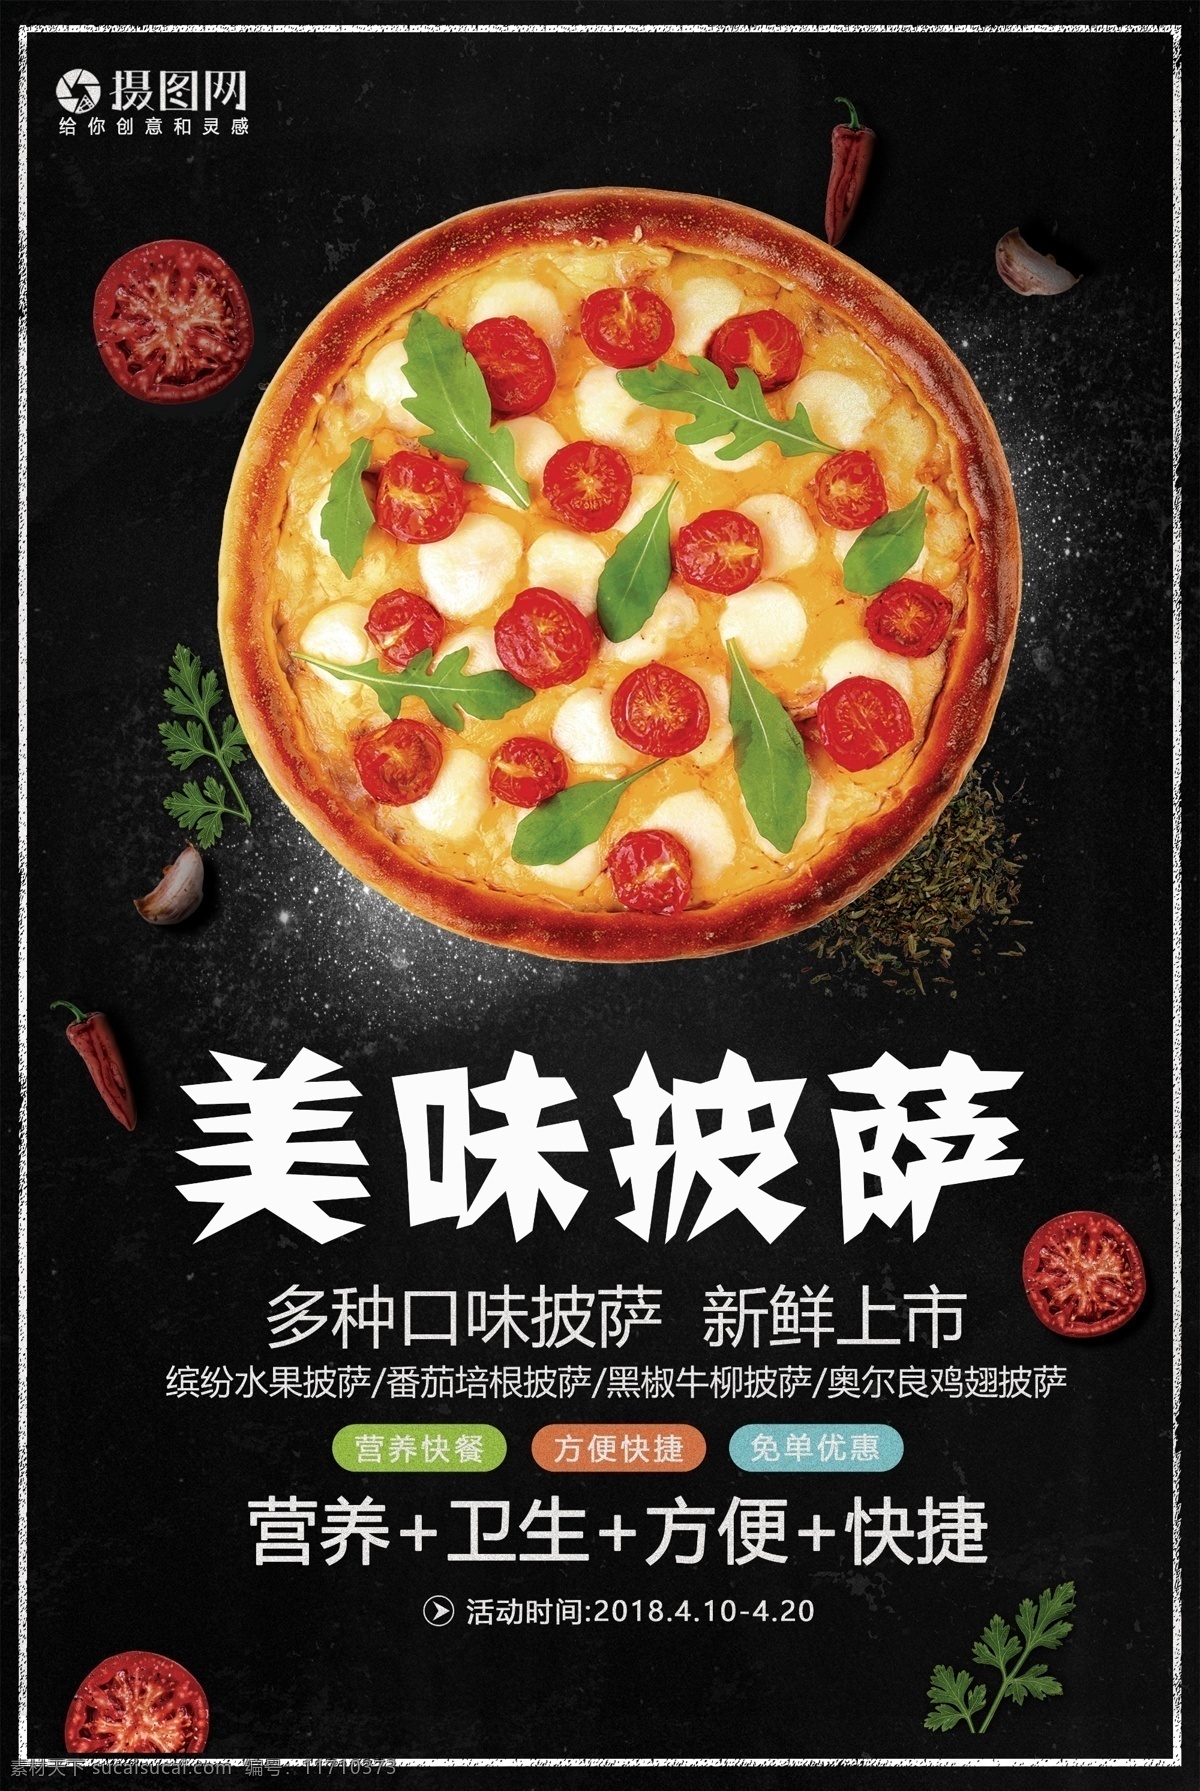 美味 披萨 美食 宣传海报 美食餐饮 披萨海报 披萨促销 西餐 披萨店 西式披萨 披萨馅饼 披萨饼 意大利披萨 pizza 披萨宣传 西餐披萨